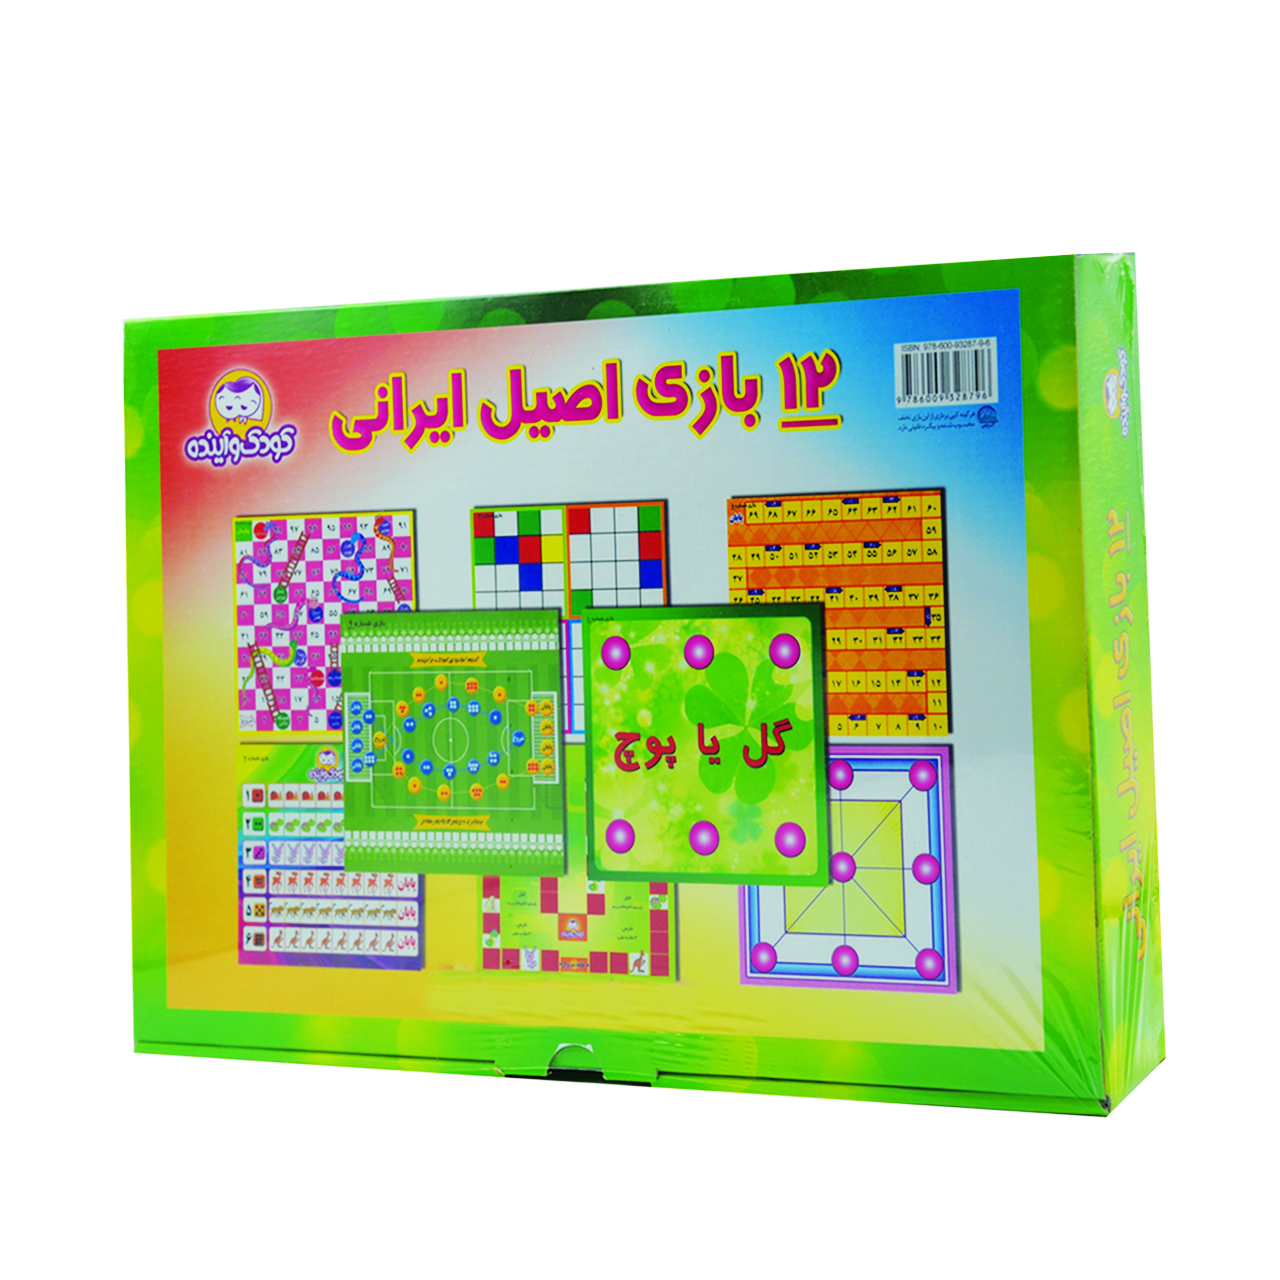 بازی فکری کودک و آینده مدل 12 بازی اصیل ایرانی کد 500 